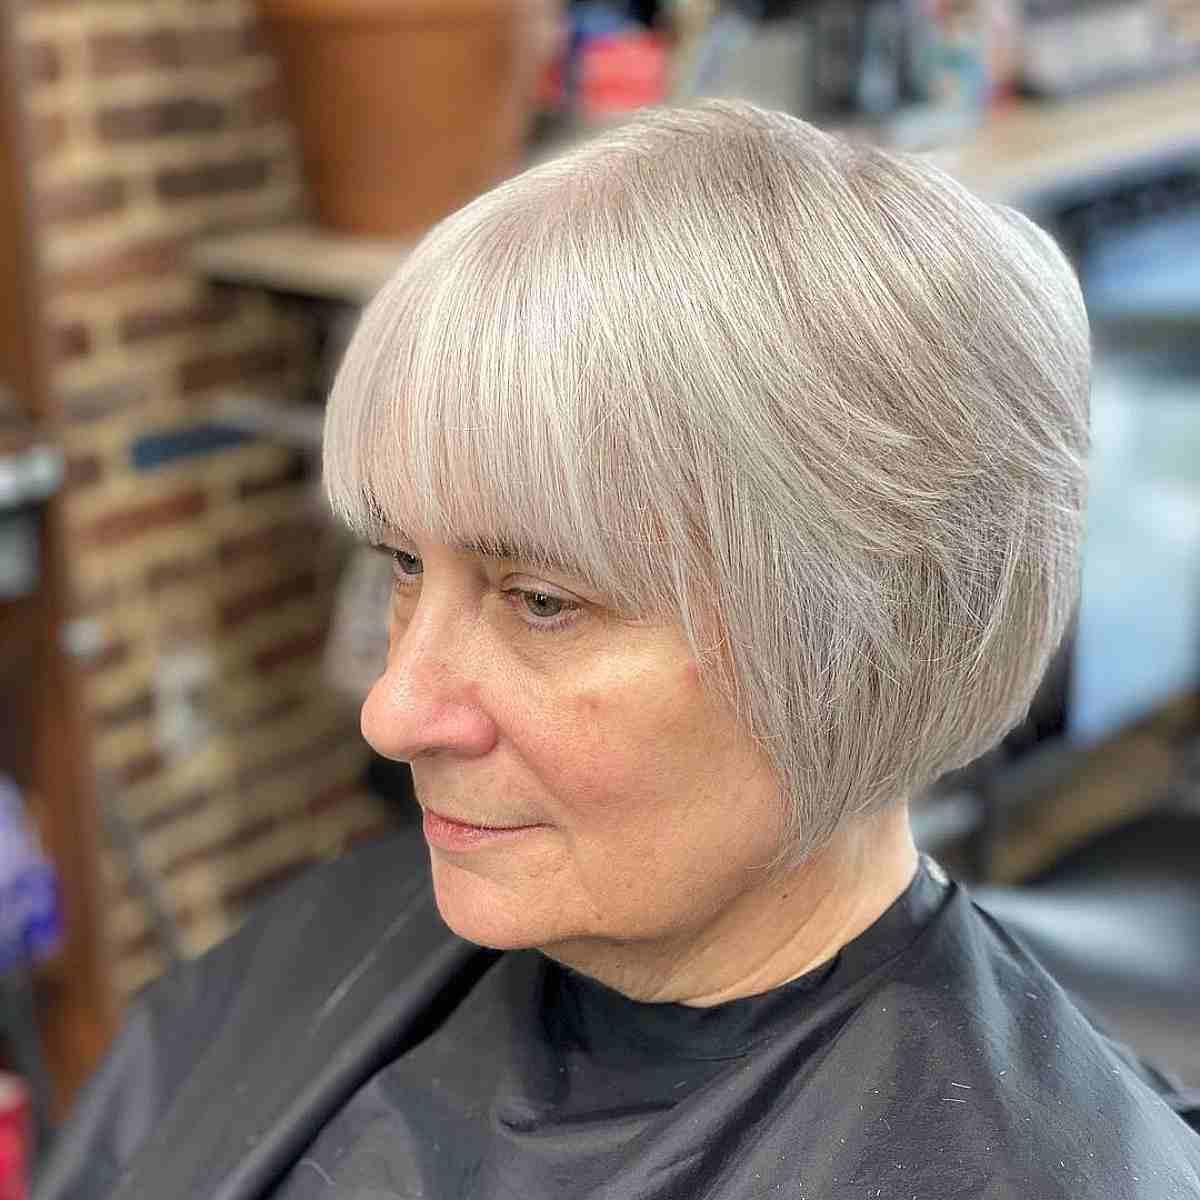 Tapered Bob Haircut on Grey Hair at the Jawline